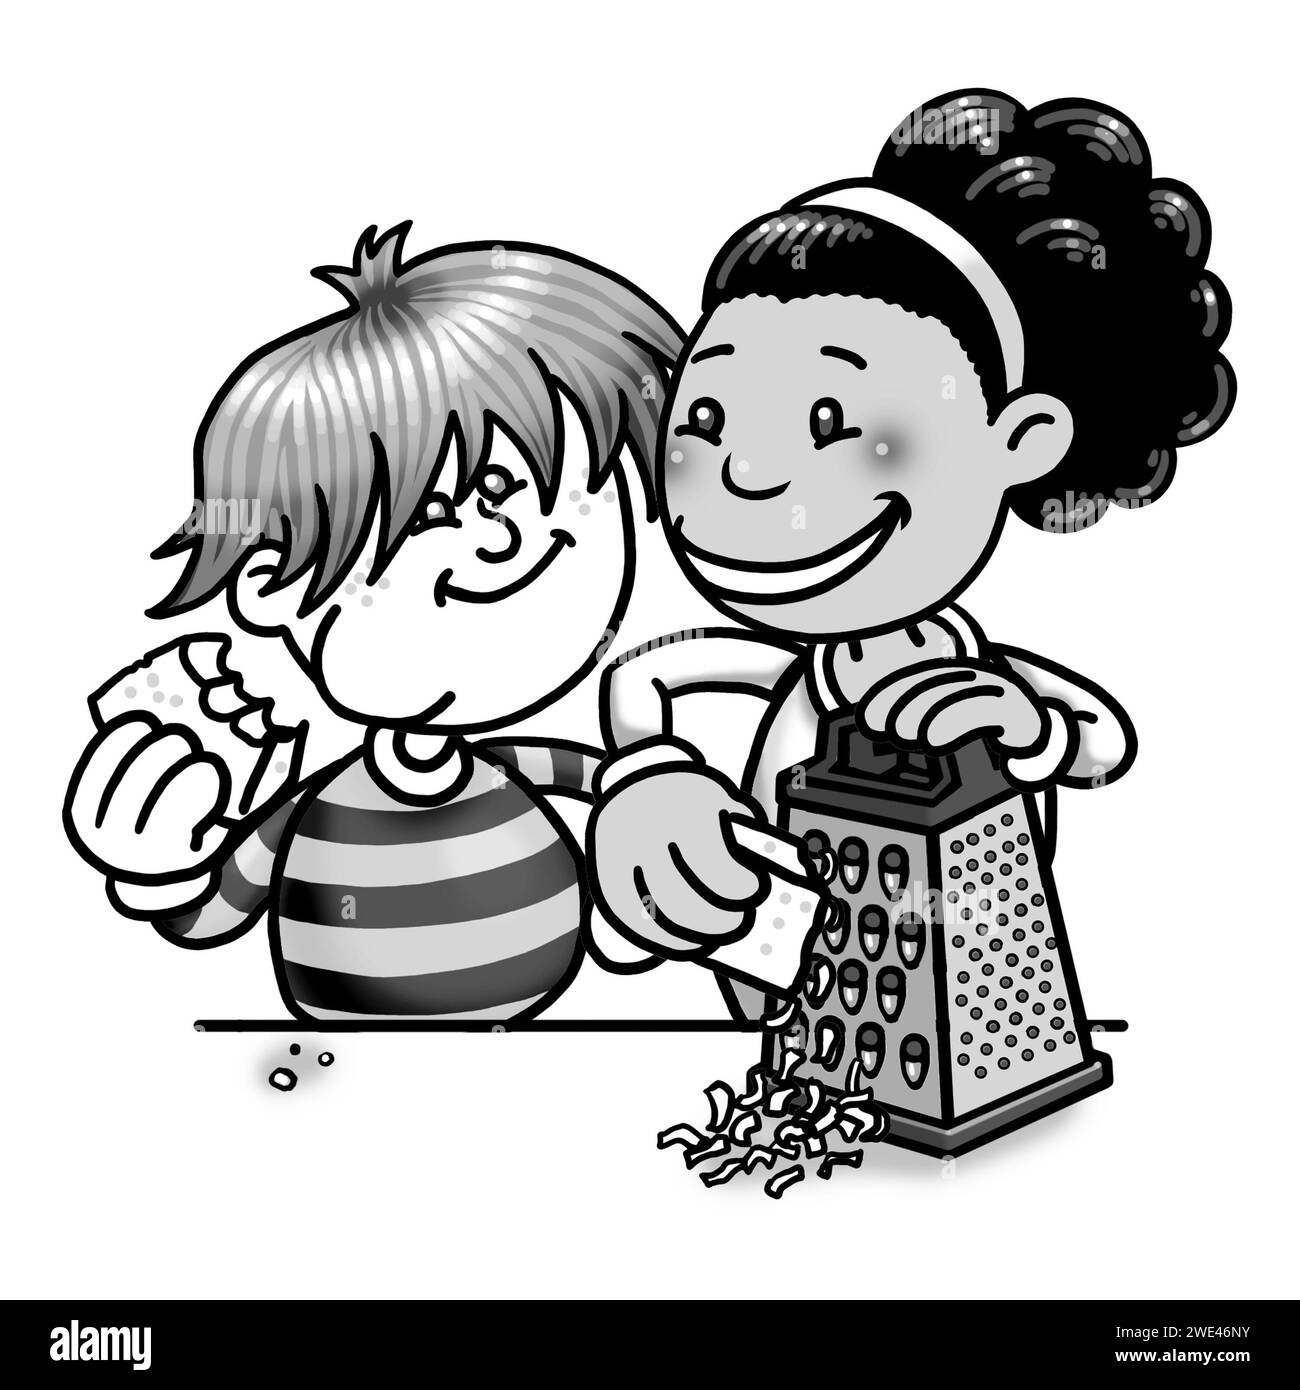 Schwarz-weiß-Kunst Illustration, Kinder kochen zusammen, schwarzes Mädchen, weißer Junge, mit einer Reibe, Käse reiben, Käse essen, Bildungsaktivitäten Stockfoto